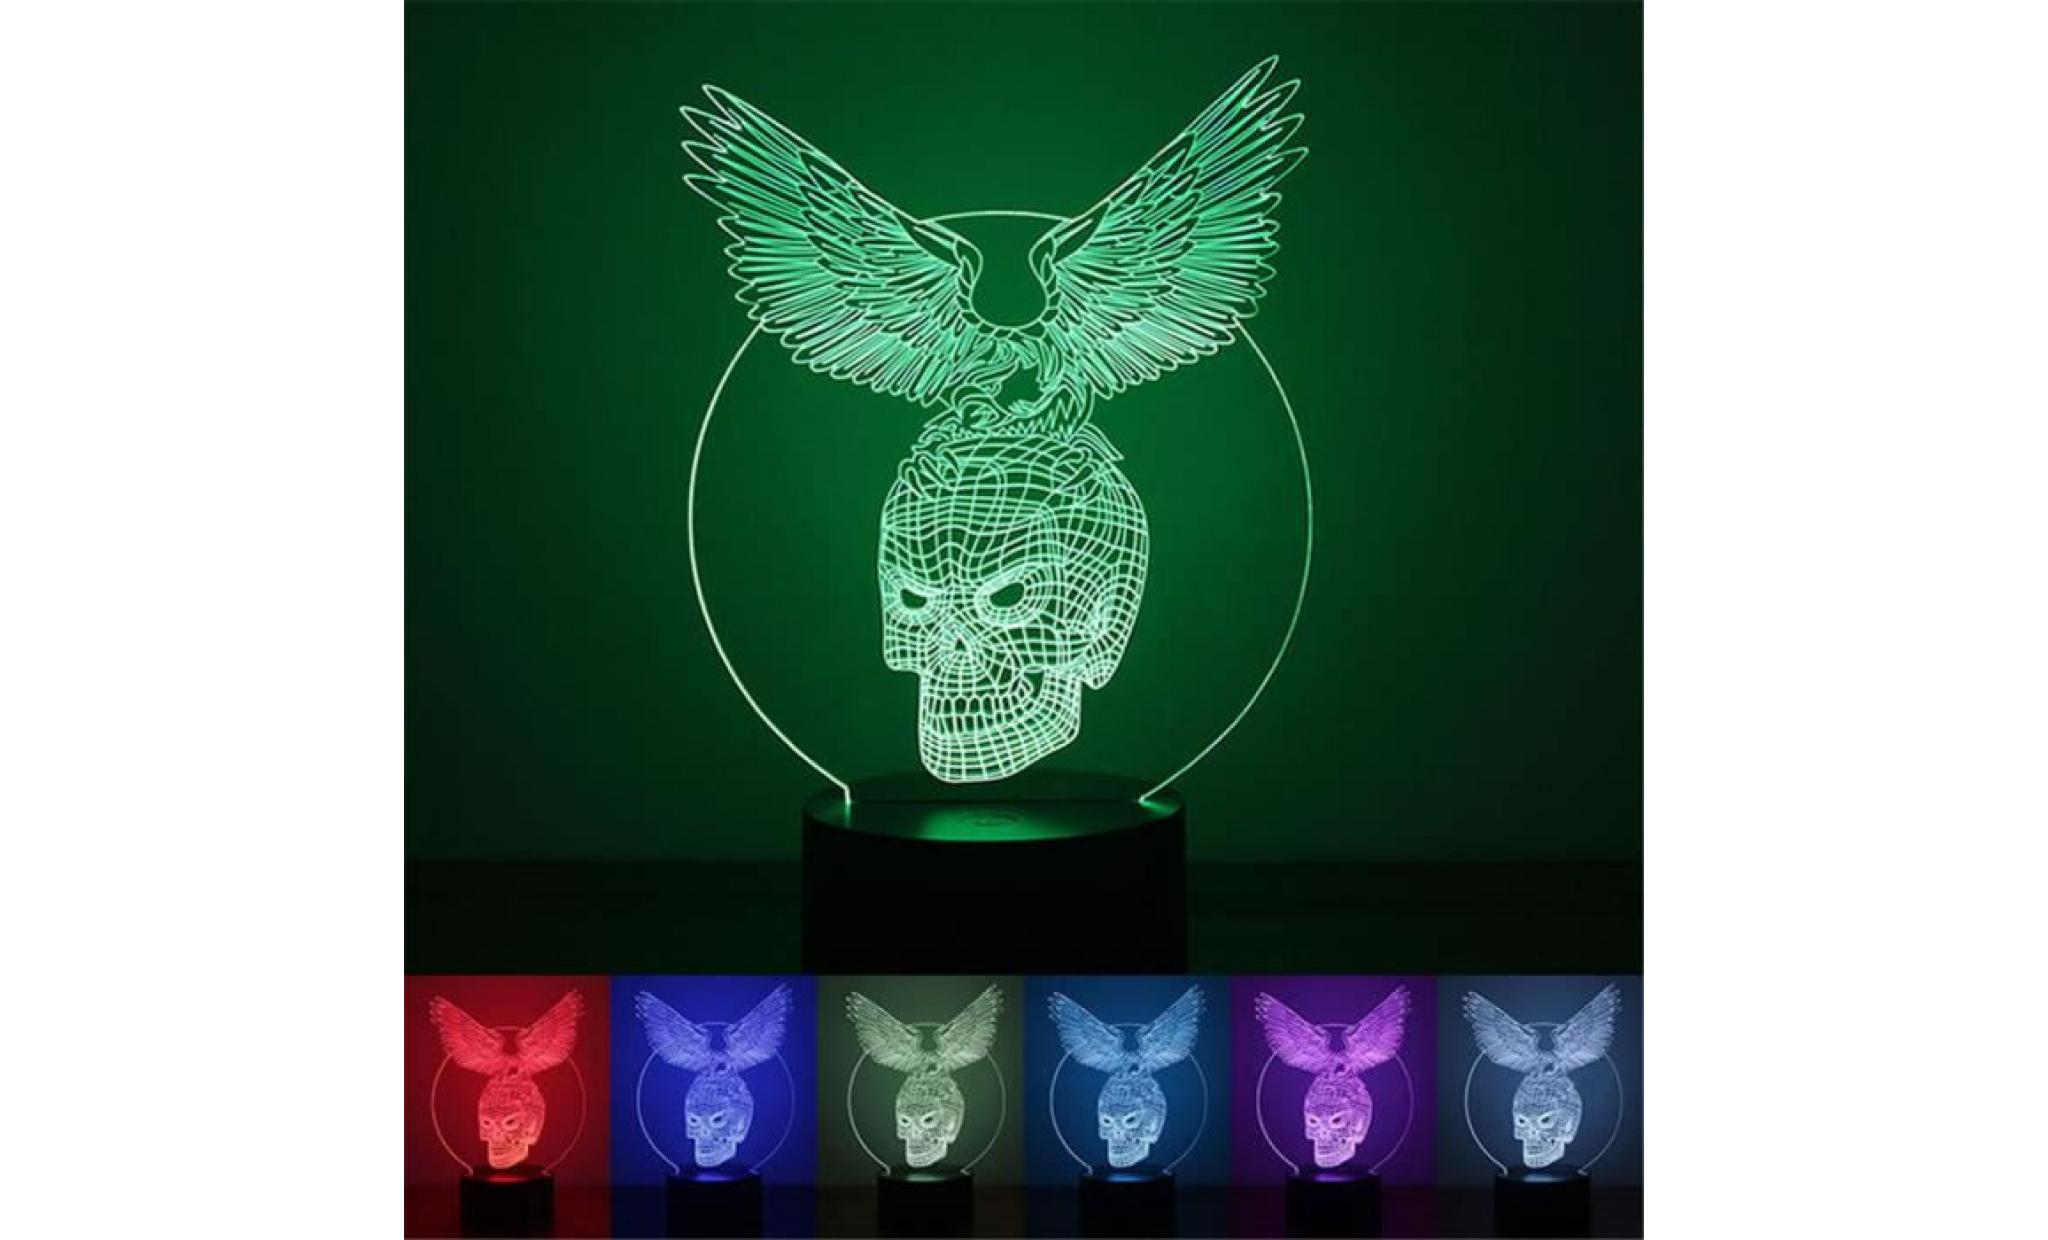 objet lumineux d interieur illusion optique de la lumière 3d de nuit du crâne 3d d'eagle led 7 couleurs pour la maison_yumy0619047